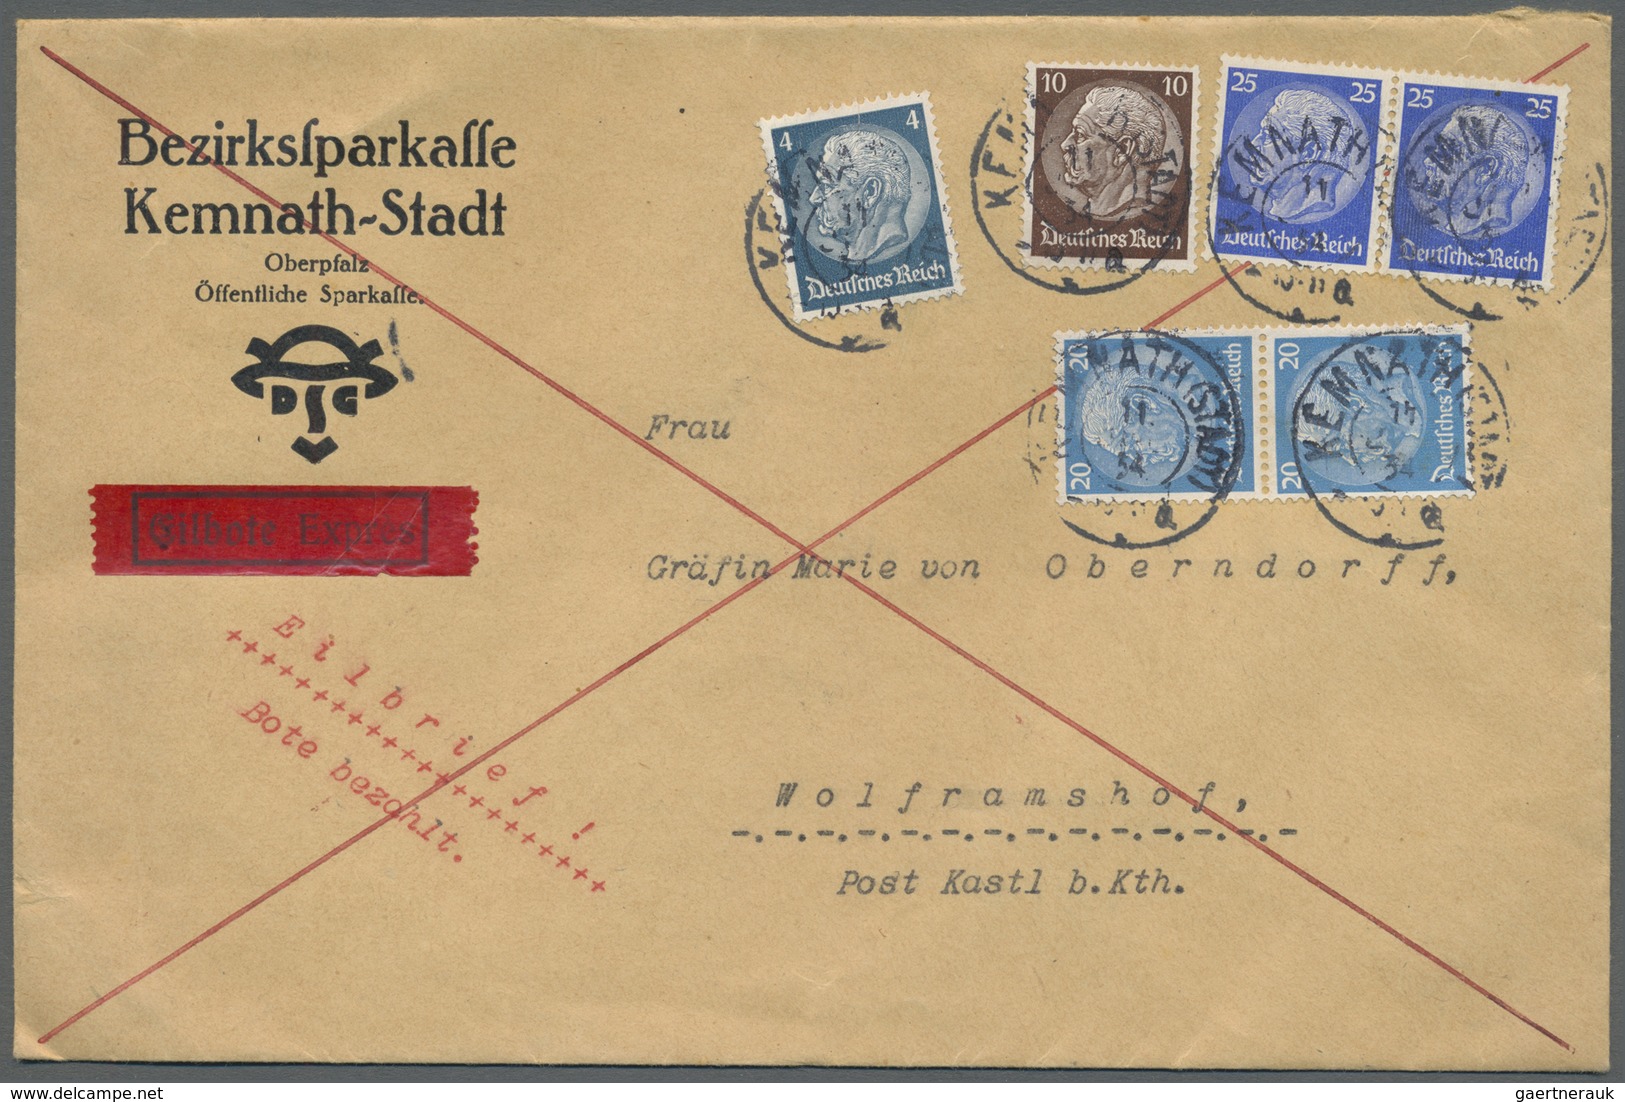 Br Deutsches Reich - 3. Reich: 1934, Eil-Doppelbrief An Die Gräfin Marie Von Oberndorff Nach Wolframsho - Ungebraucht